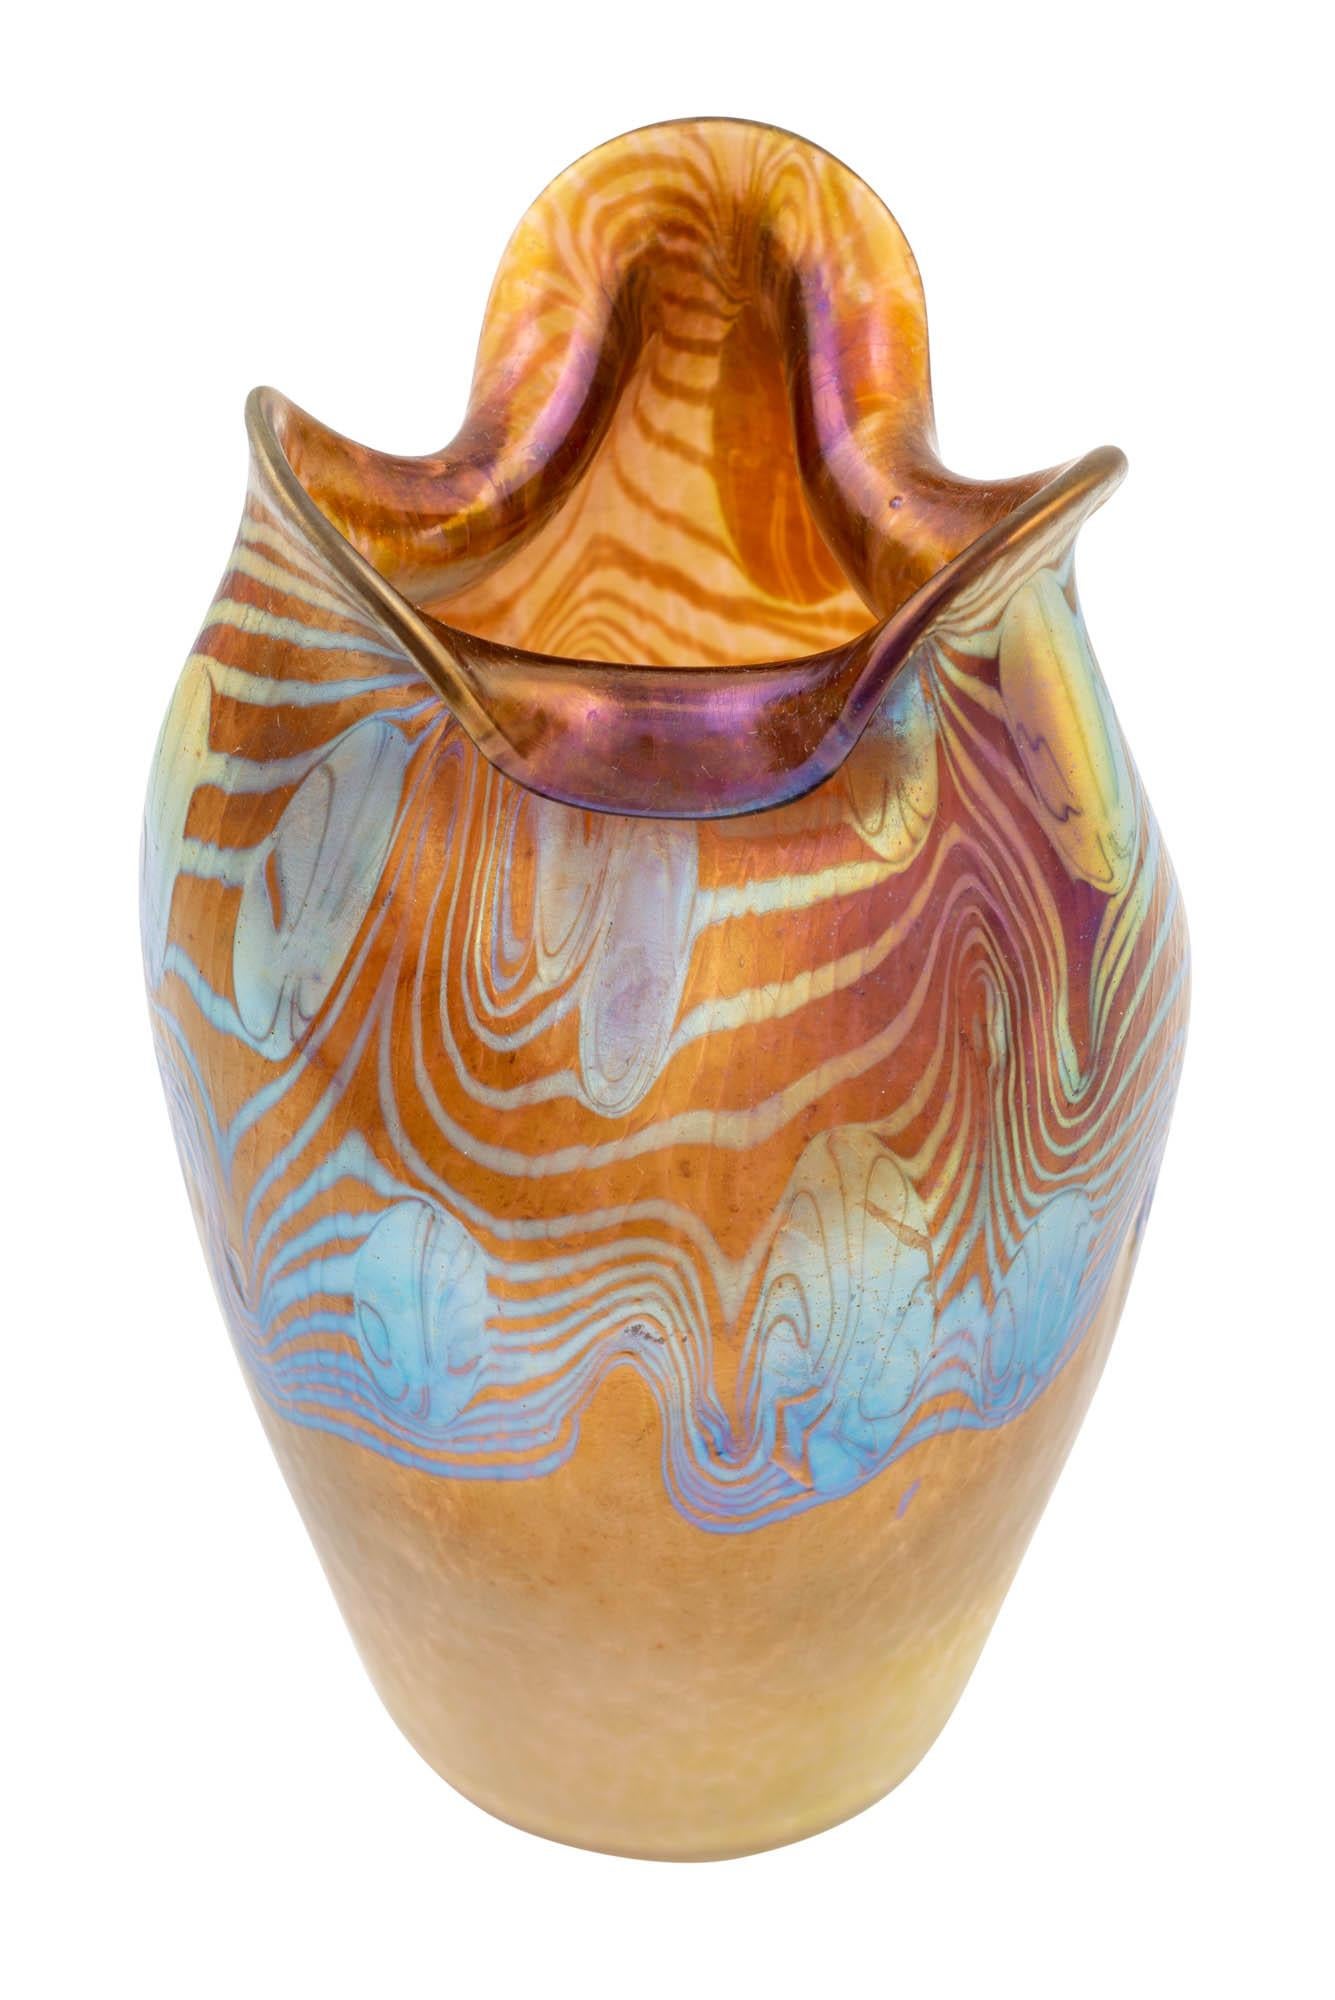 Art Nouveau Johann Loetz-Witwe, Vase Decor Argus Phenomen Genre 2/351, circa 1902 For Sale